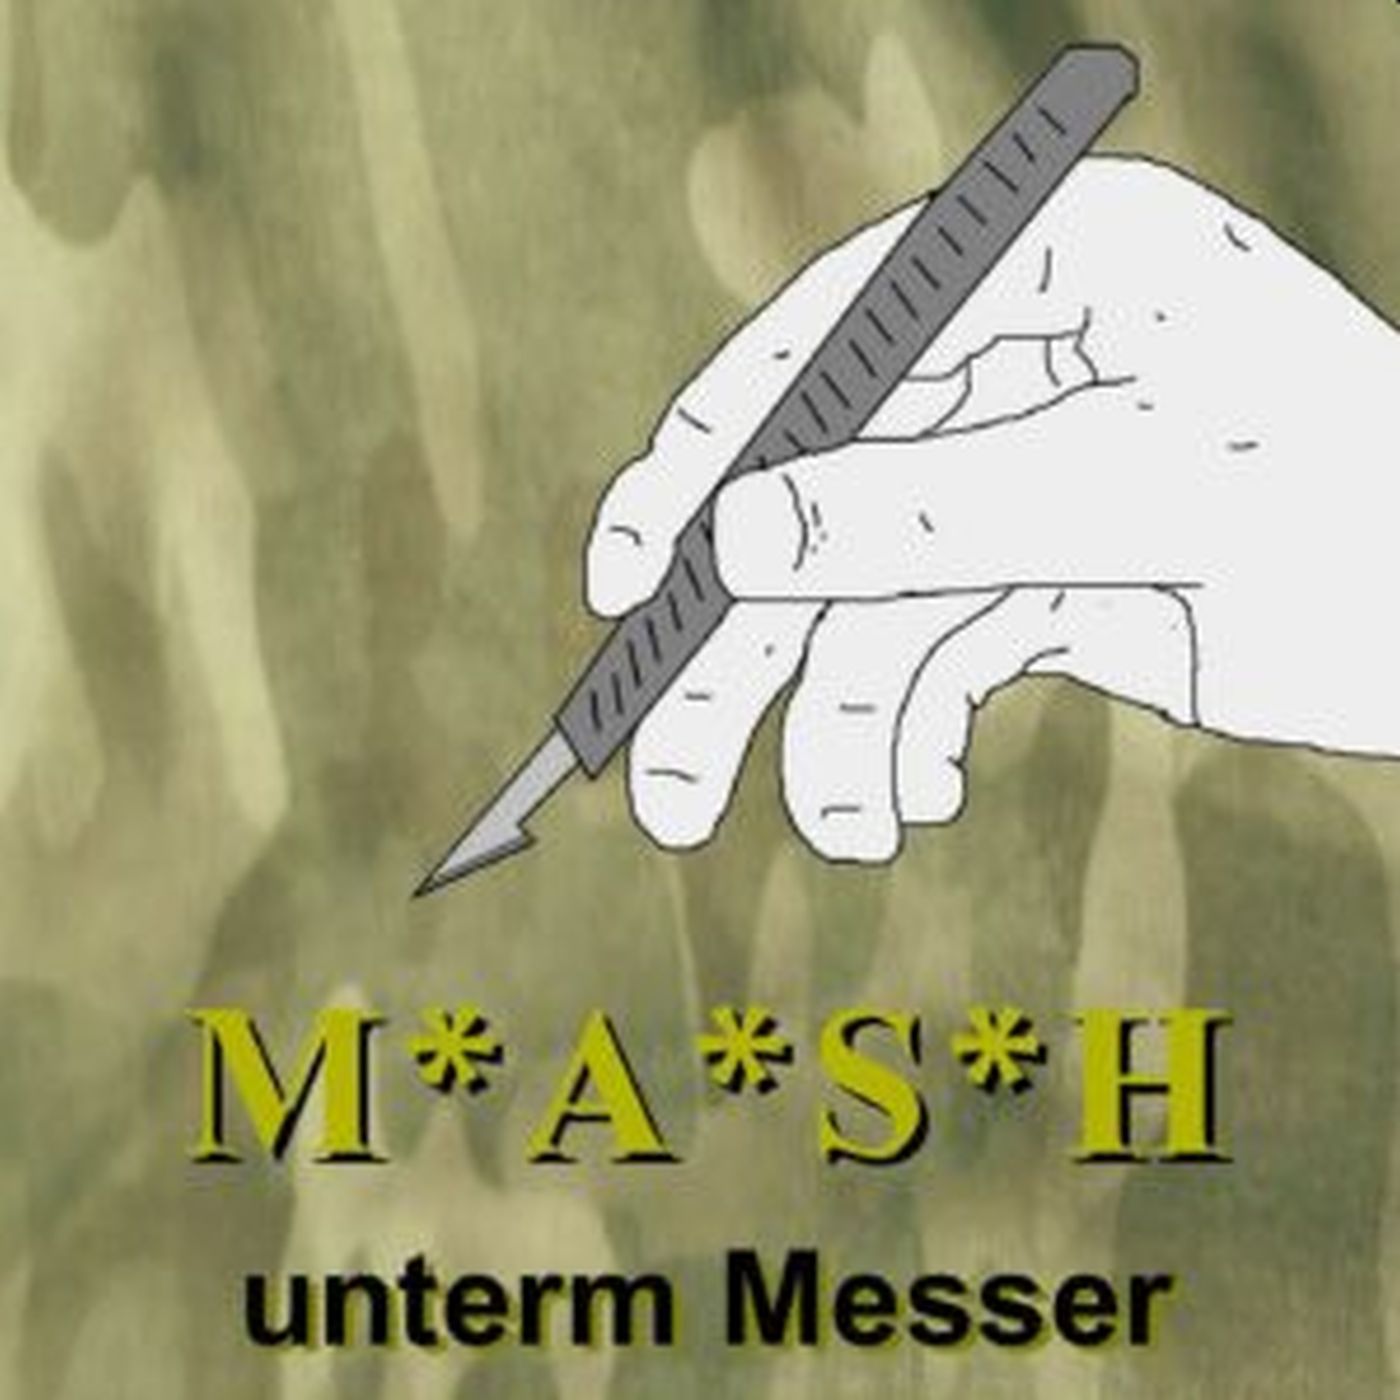 Cartoonversion einer Hand, die ein Skalpell hält vor einem Camouflage Hintergrund. Darunter der Schriftzug "M*A*S*H unterm Messer"